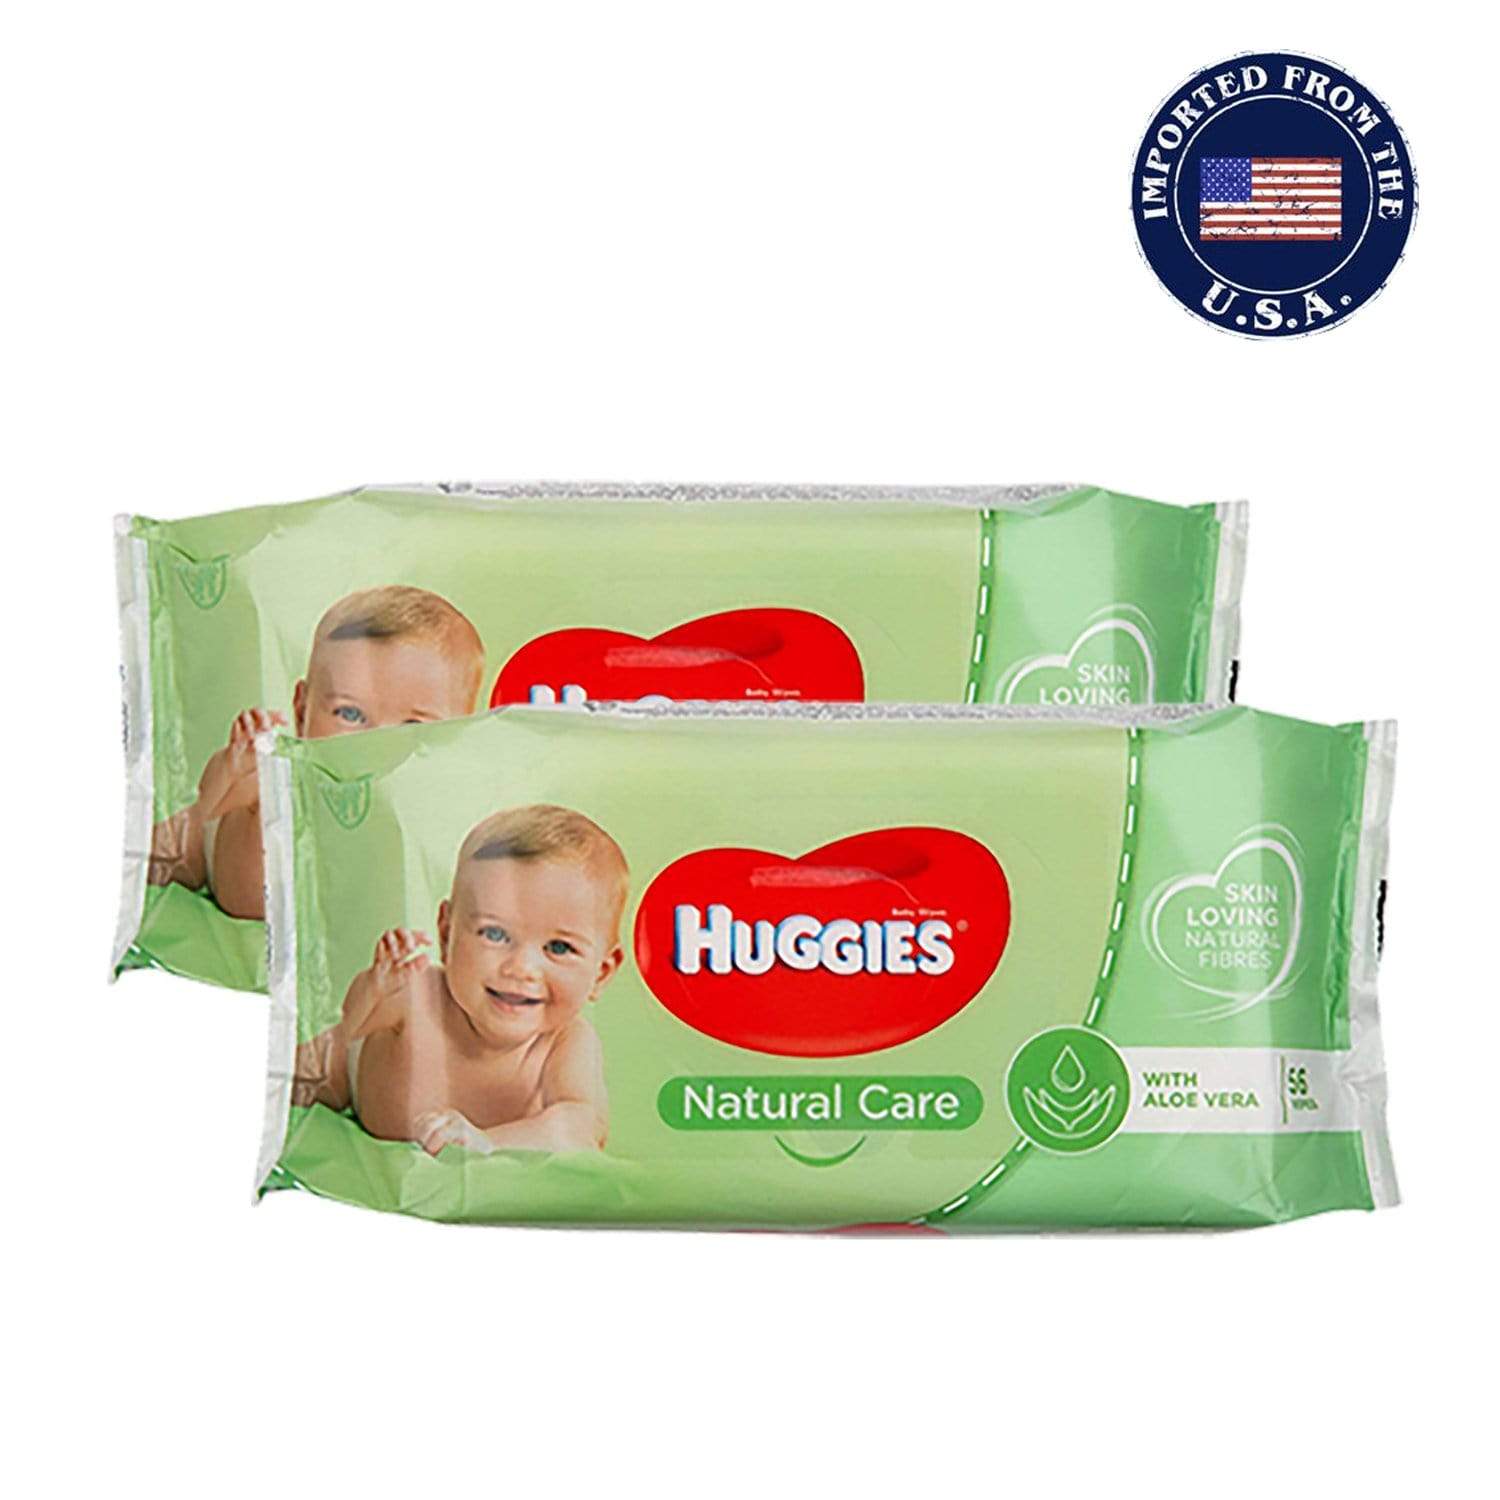 HUGGIES Personal Care HUGGIES - Natural Care Baby Wipes - 2 Packs